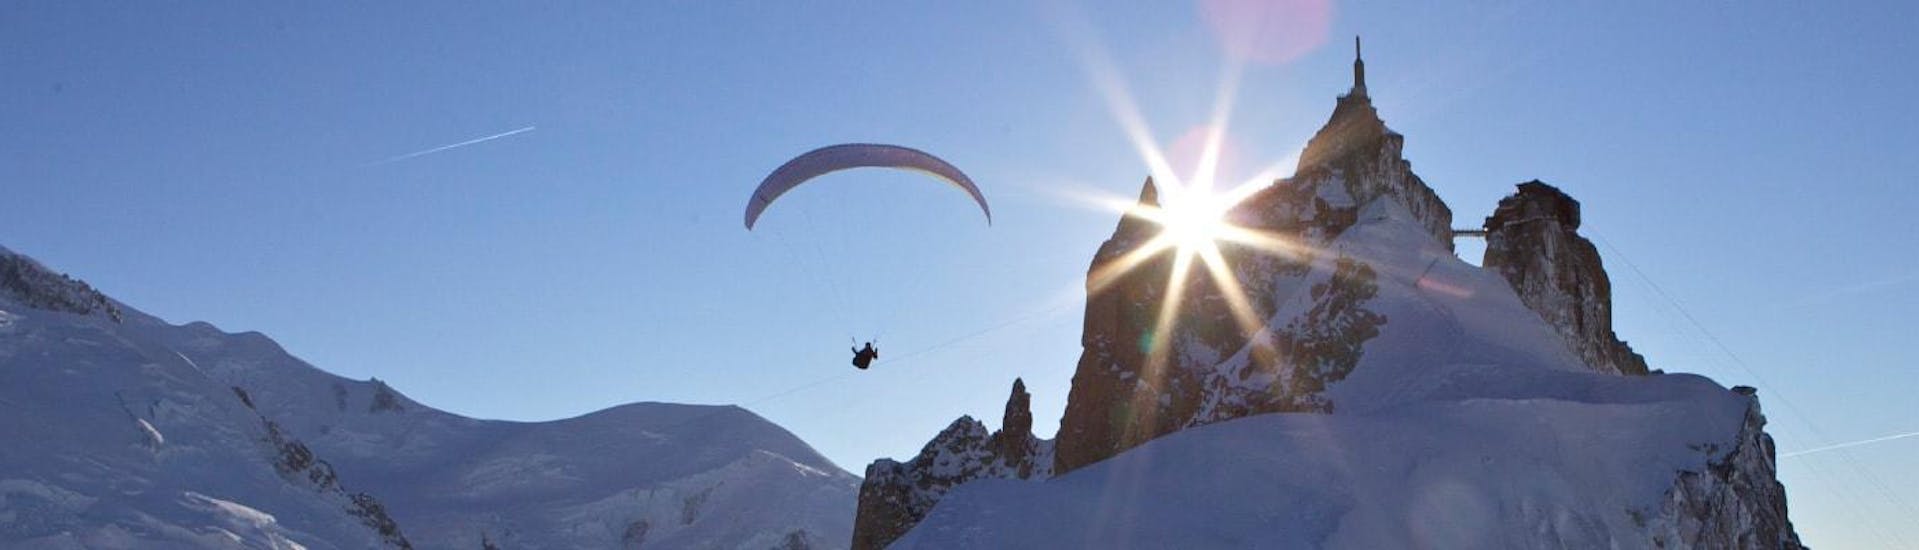 Ein Paragliding-Pilot von Kailash Paragliding führt einen Tandem-Flug mit dem Gleitschirm von Aiguille du midi aus vor einer Bergkulisse durch.